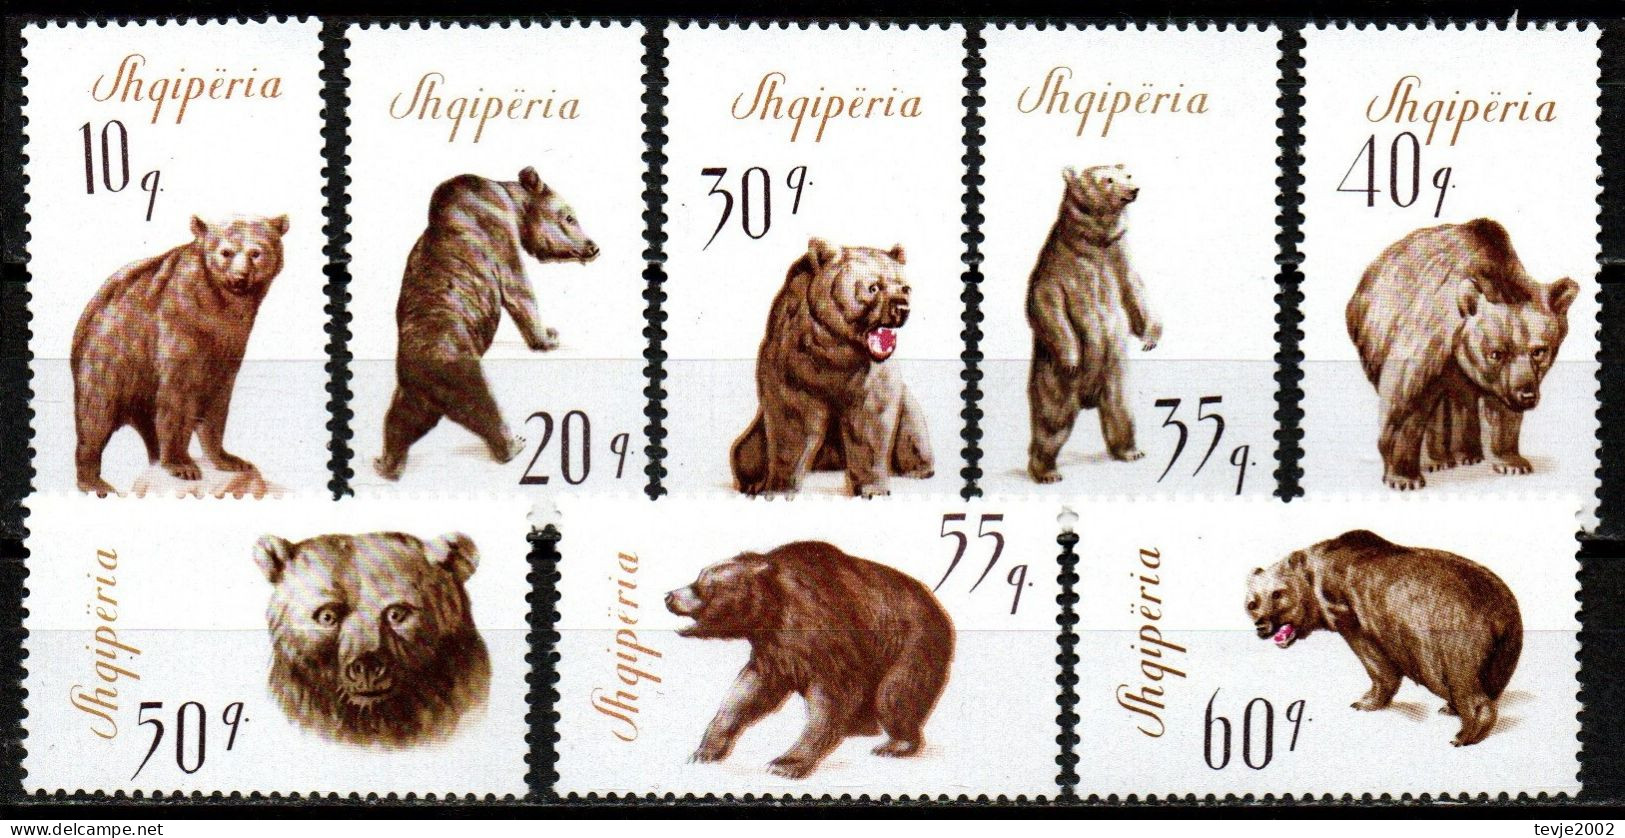 Albanien 1965 - Mi.Nr. 1010 - 1017 - Postfrisch MNH - Tiere Animals Bären Bears - Bären